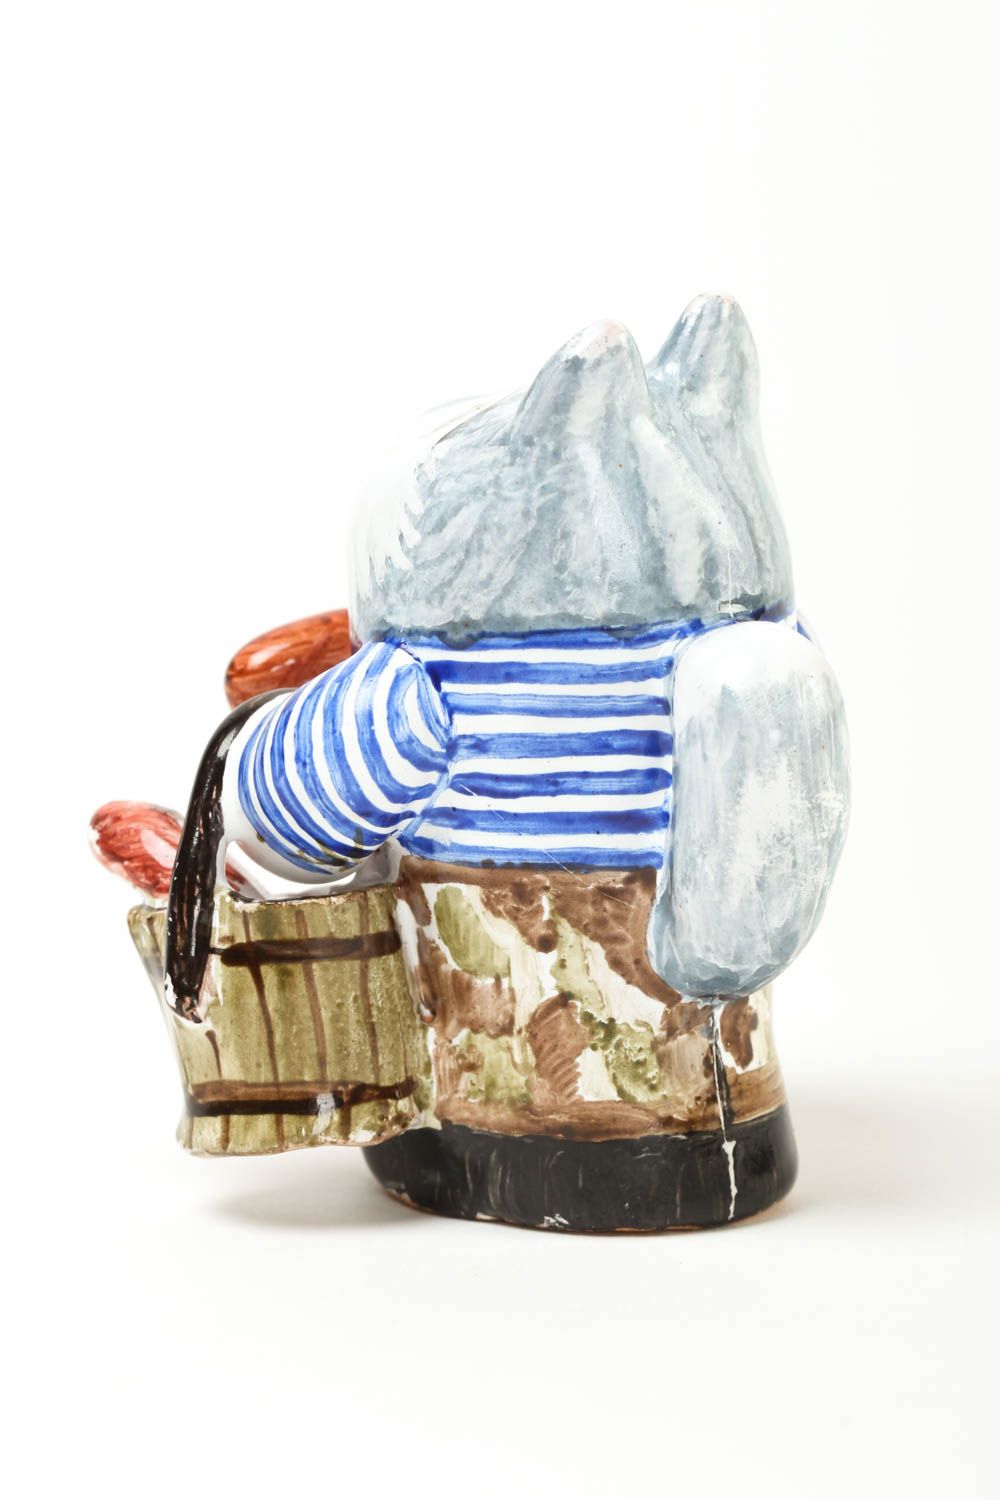 Статуэтка животного ручной работы статуэтка для декора фигурка из глины Кот фото 4